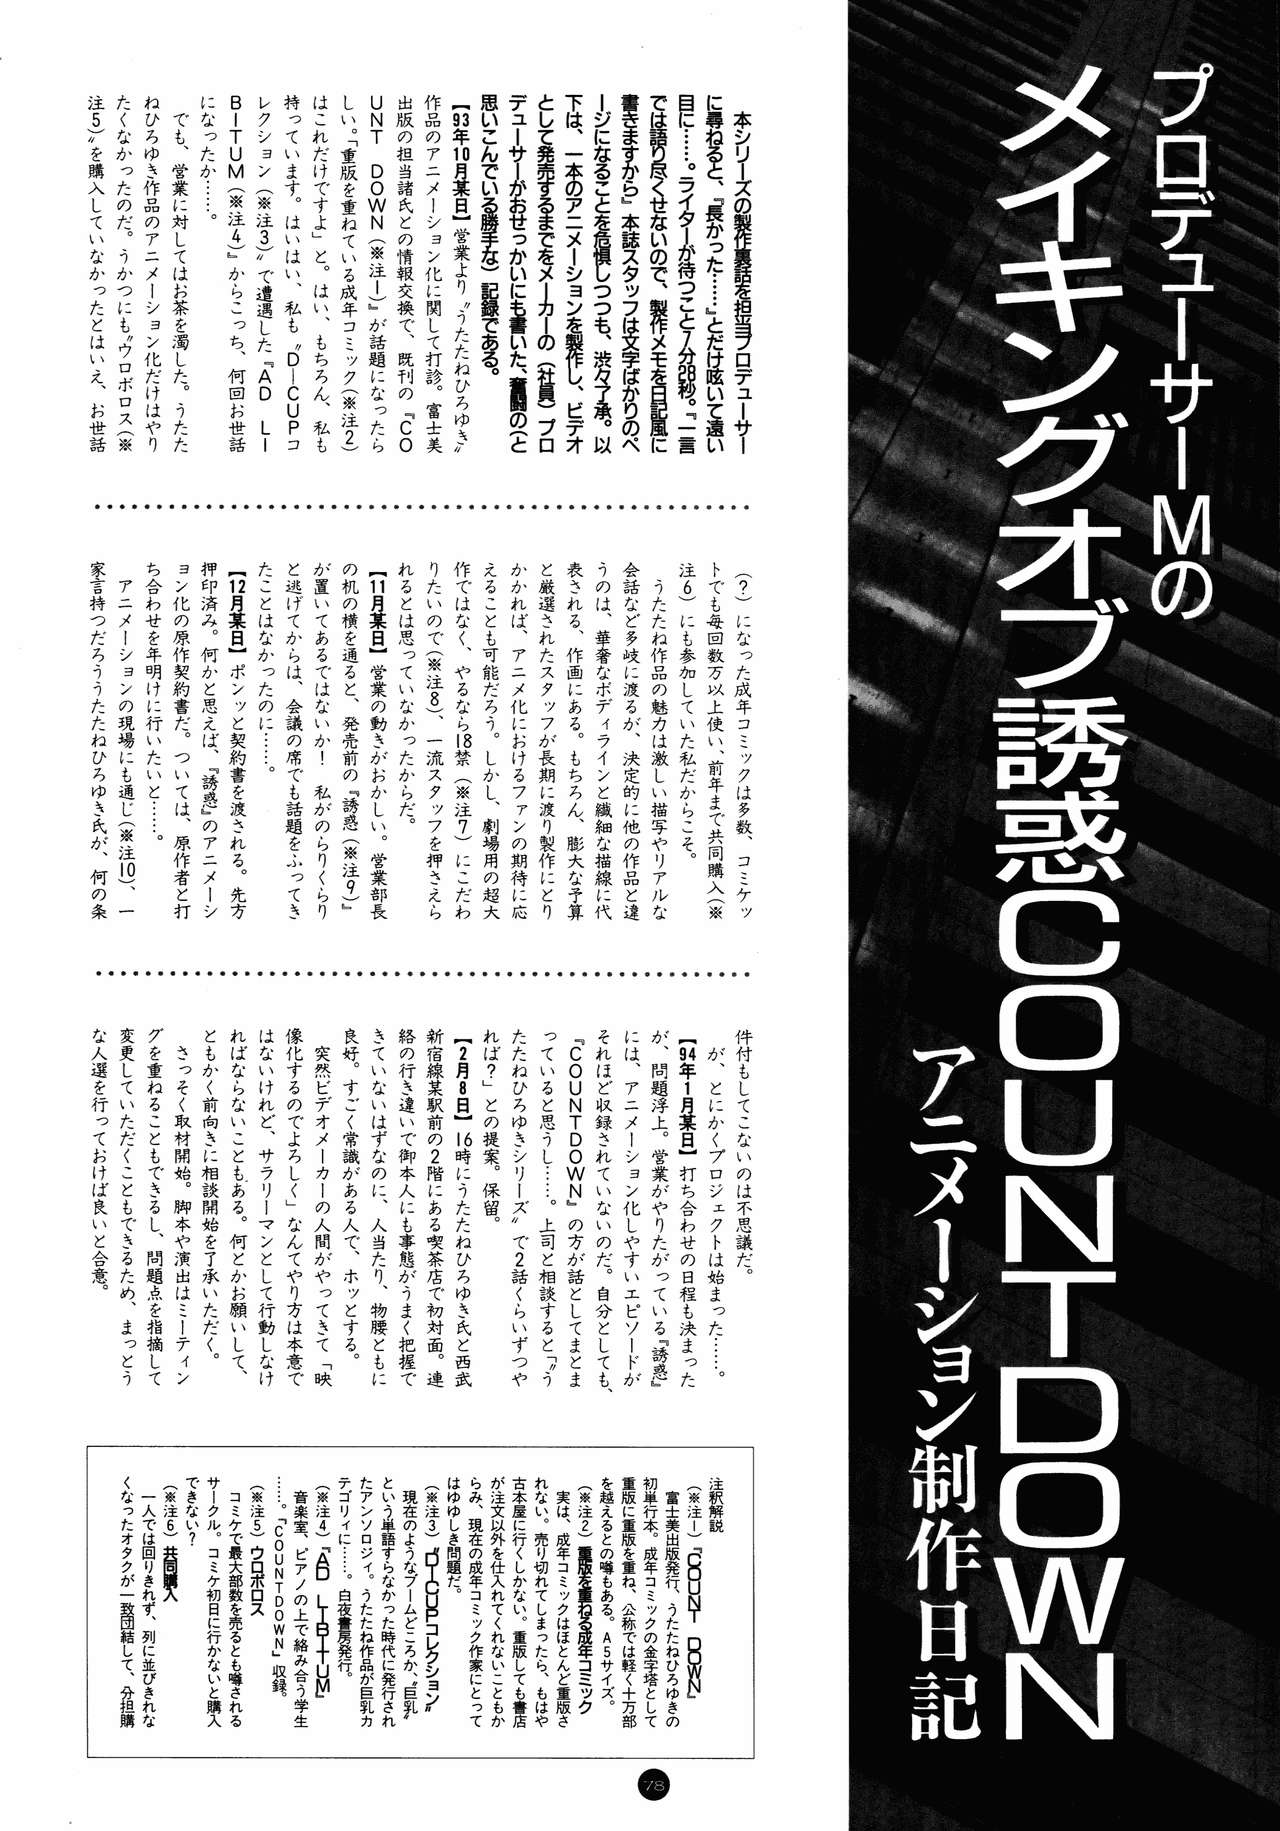 誘惑COUNT DOWN Vol.1 OMNIBUS Perfect Collection